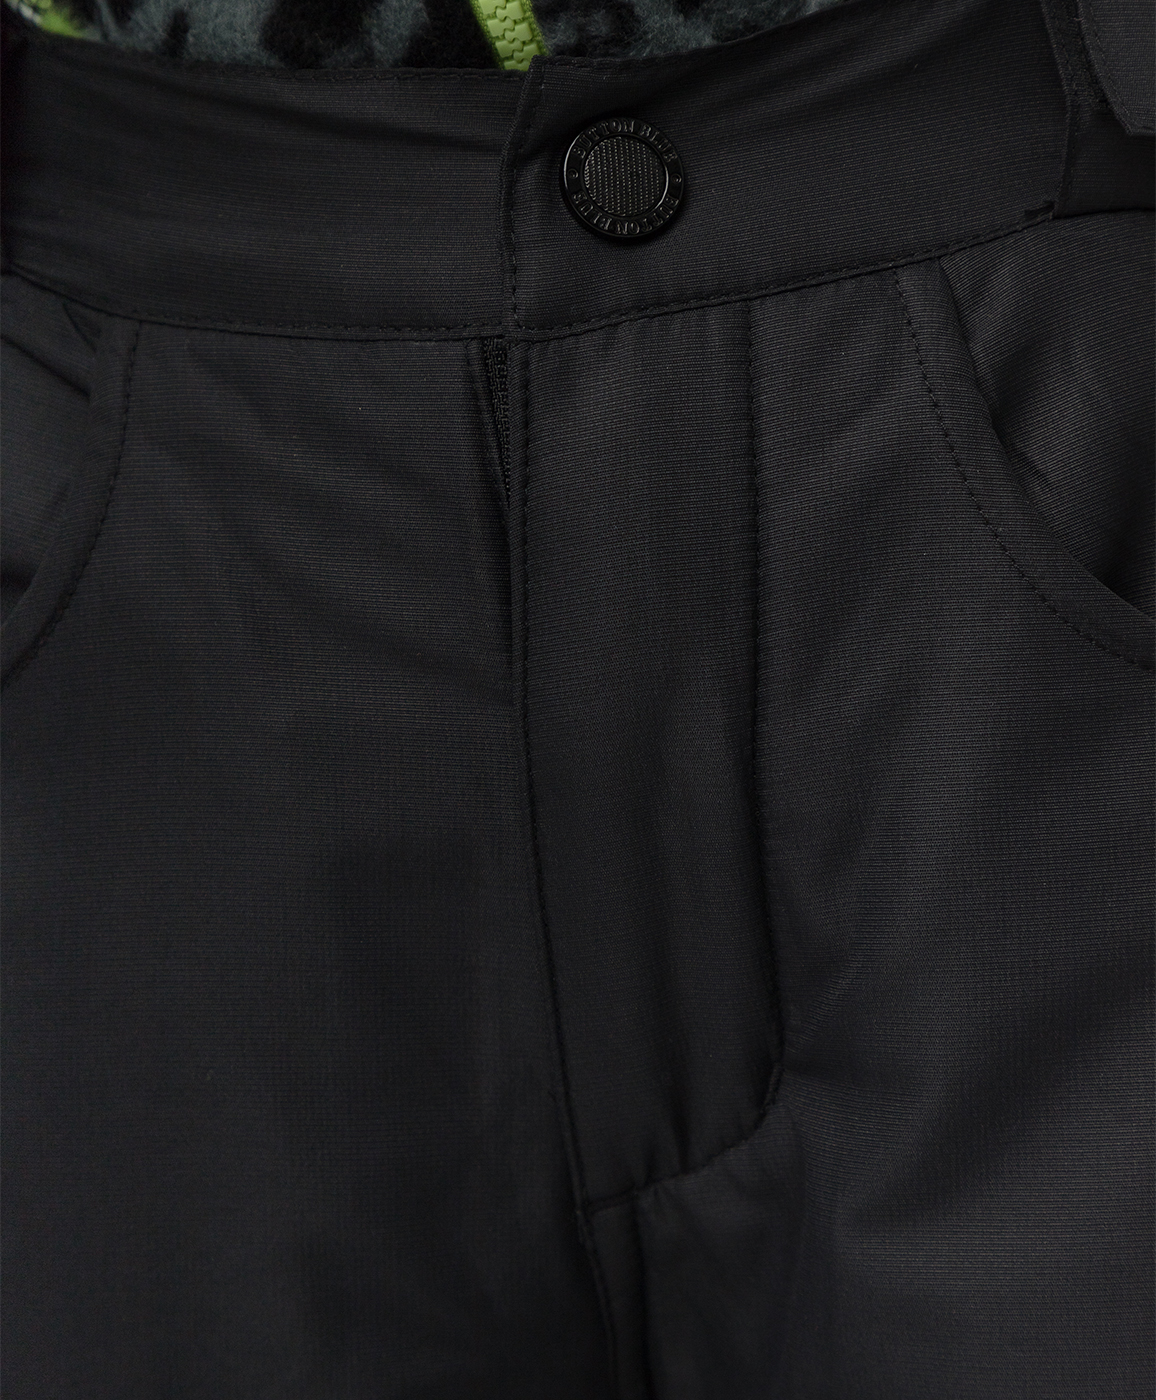 Демисезонные брюки Active Button Blue 220BBBA64010800, размер 98, цвет черный regular fit / прямые - фото 5